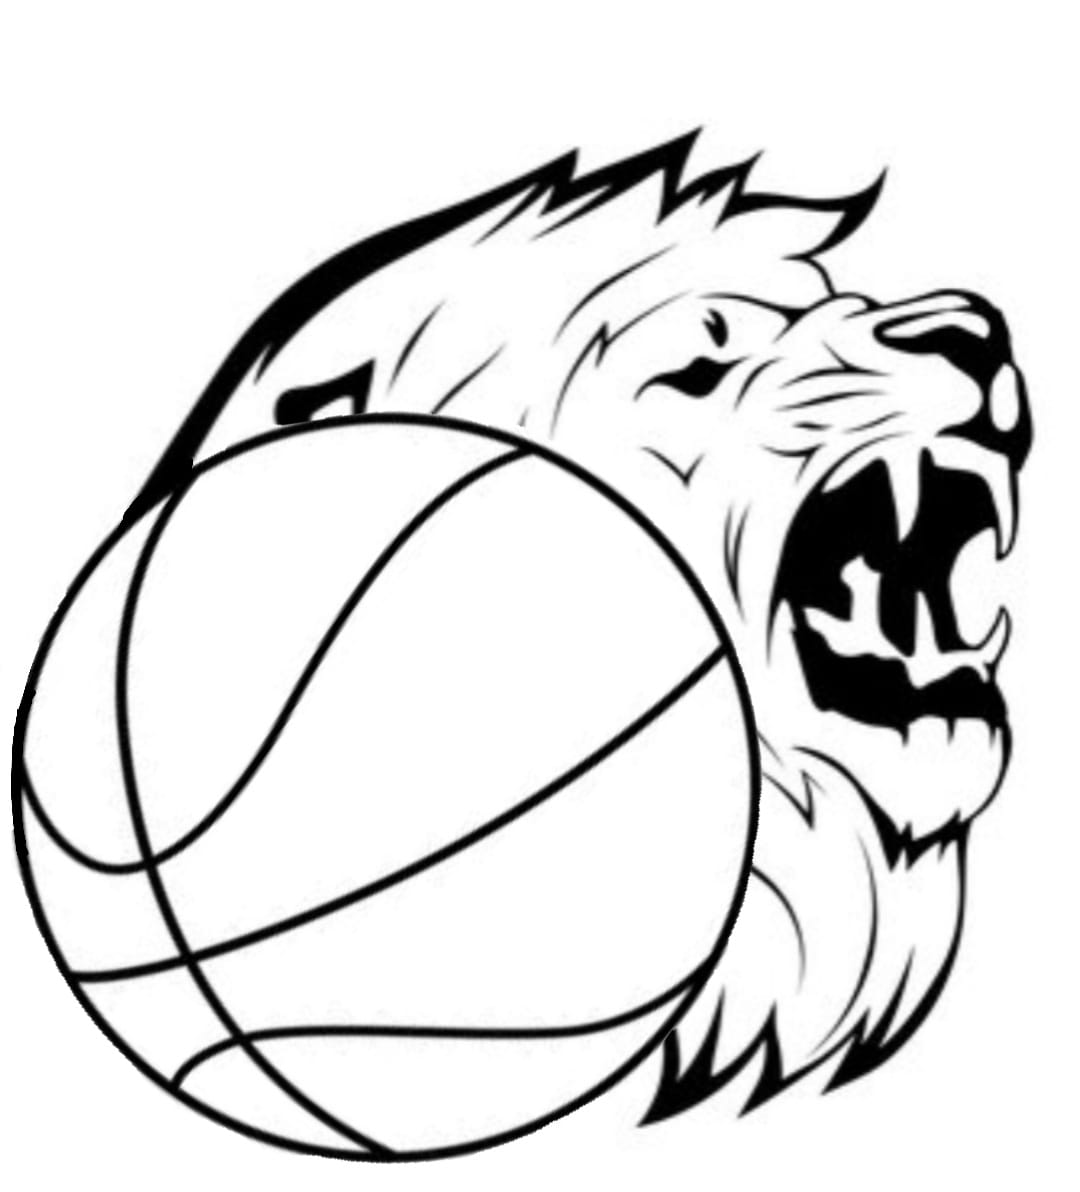 Fanshop Baskets Lions Adenau @ TuWi Adenau